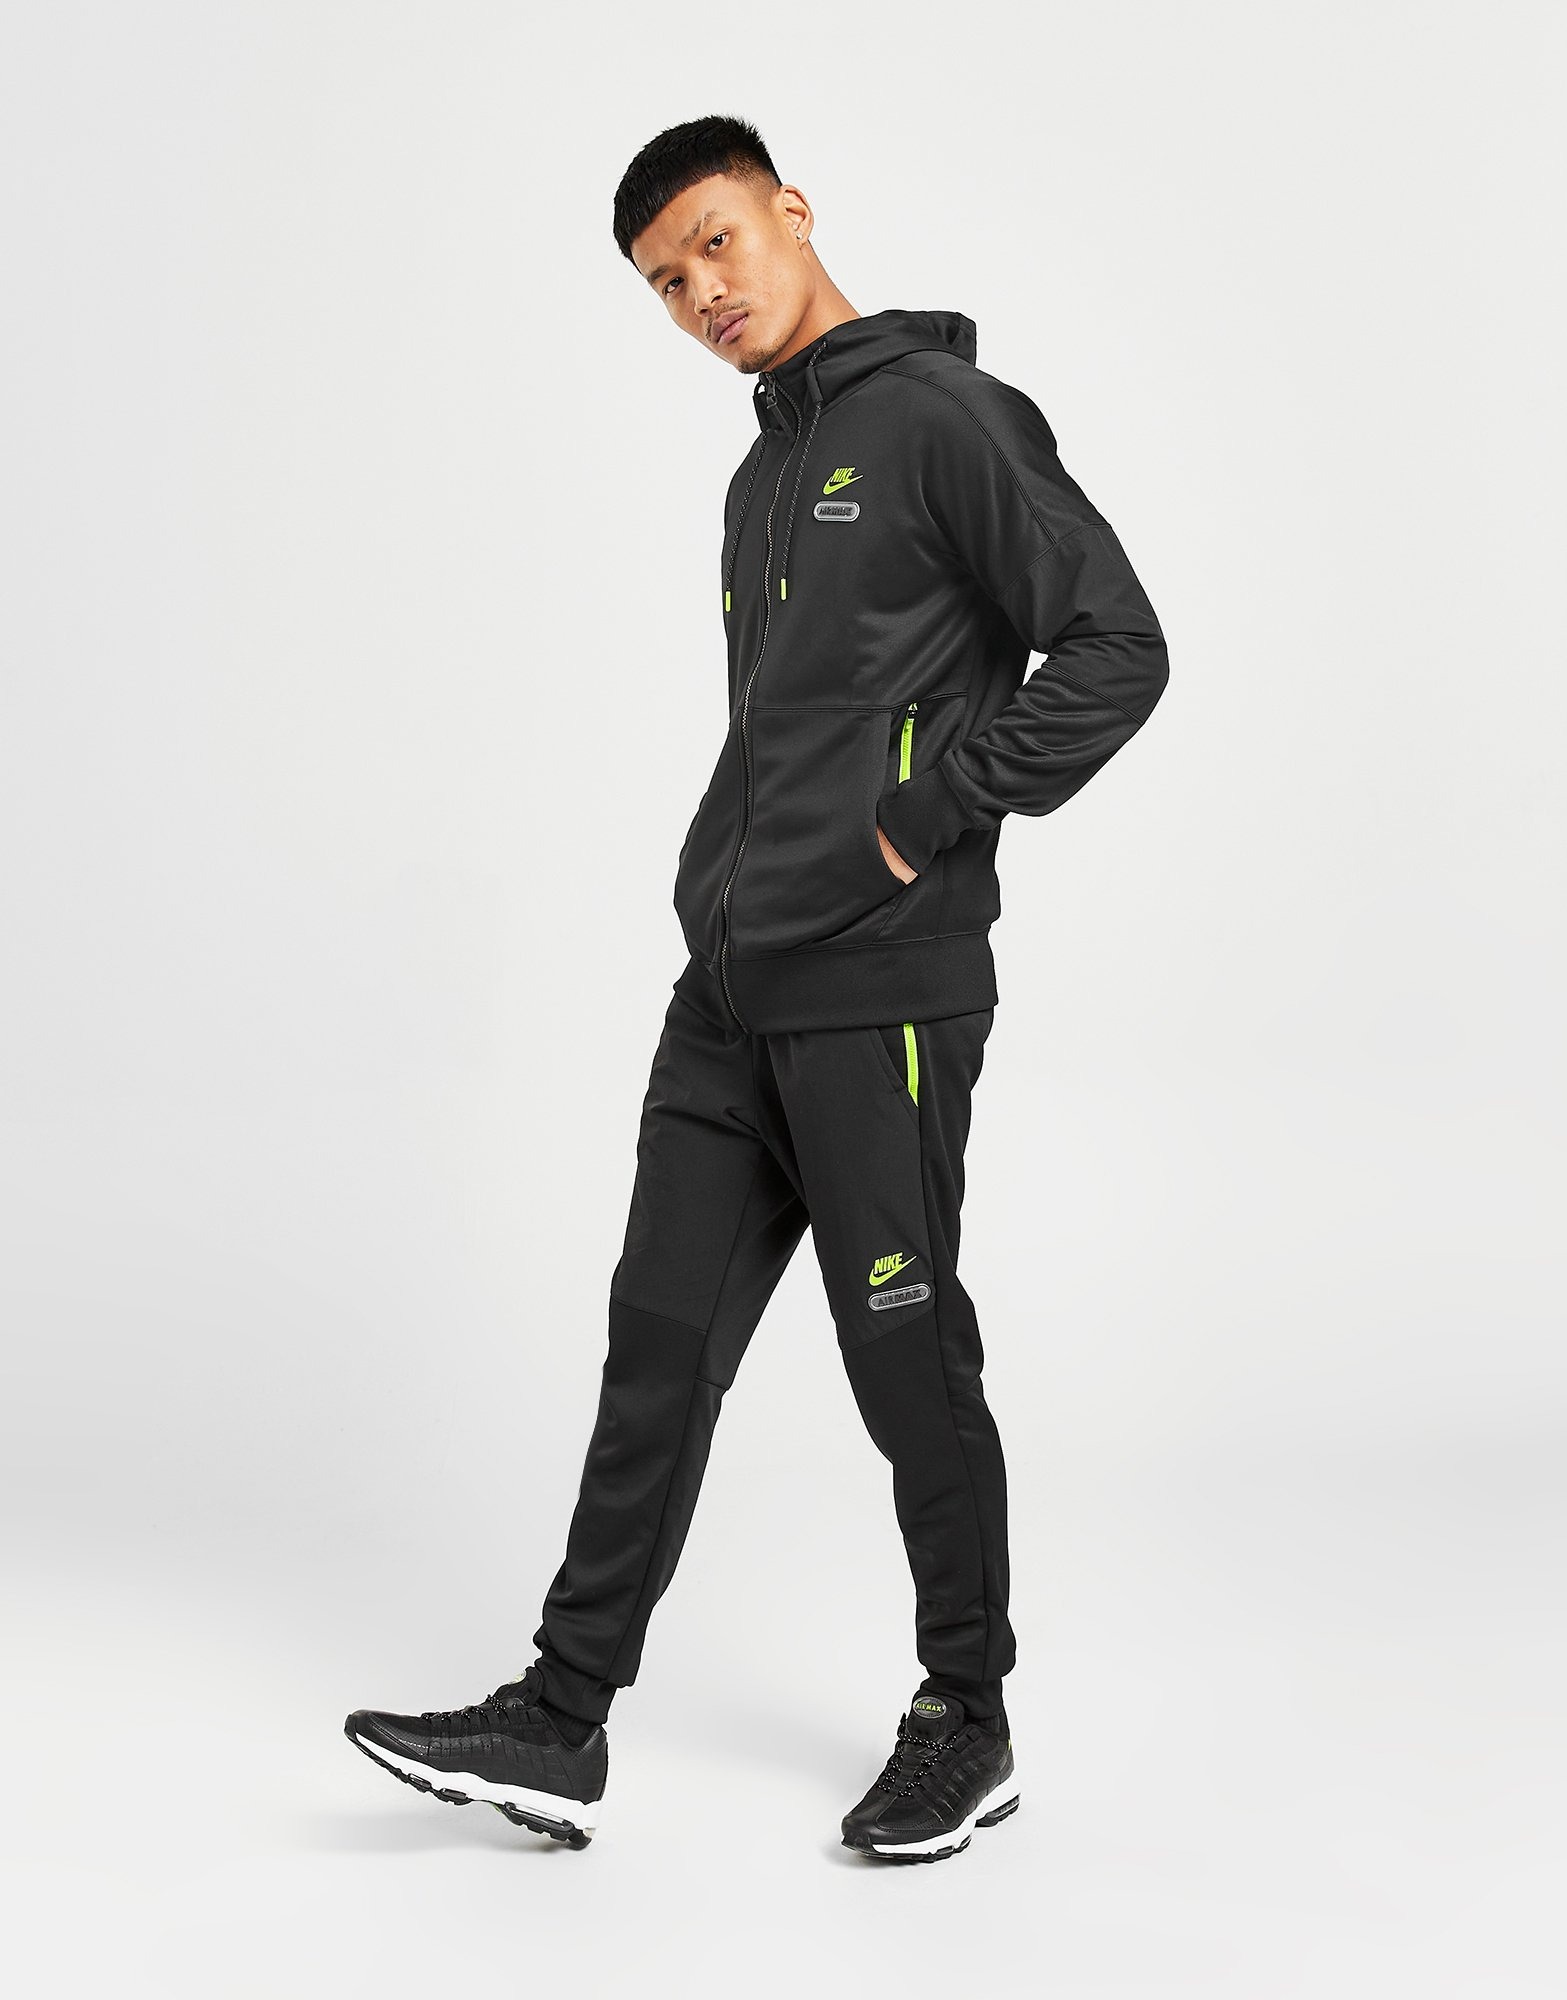 Temmen Gezichtsvermogen bodem Zwart Nike Sportswear Air Max Joggingbroek voor heren - JD Sports Nederland